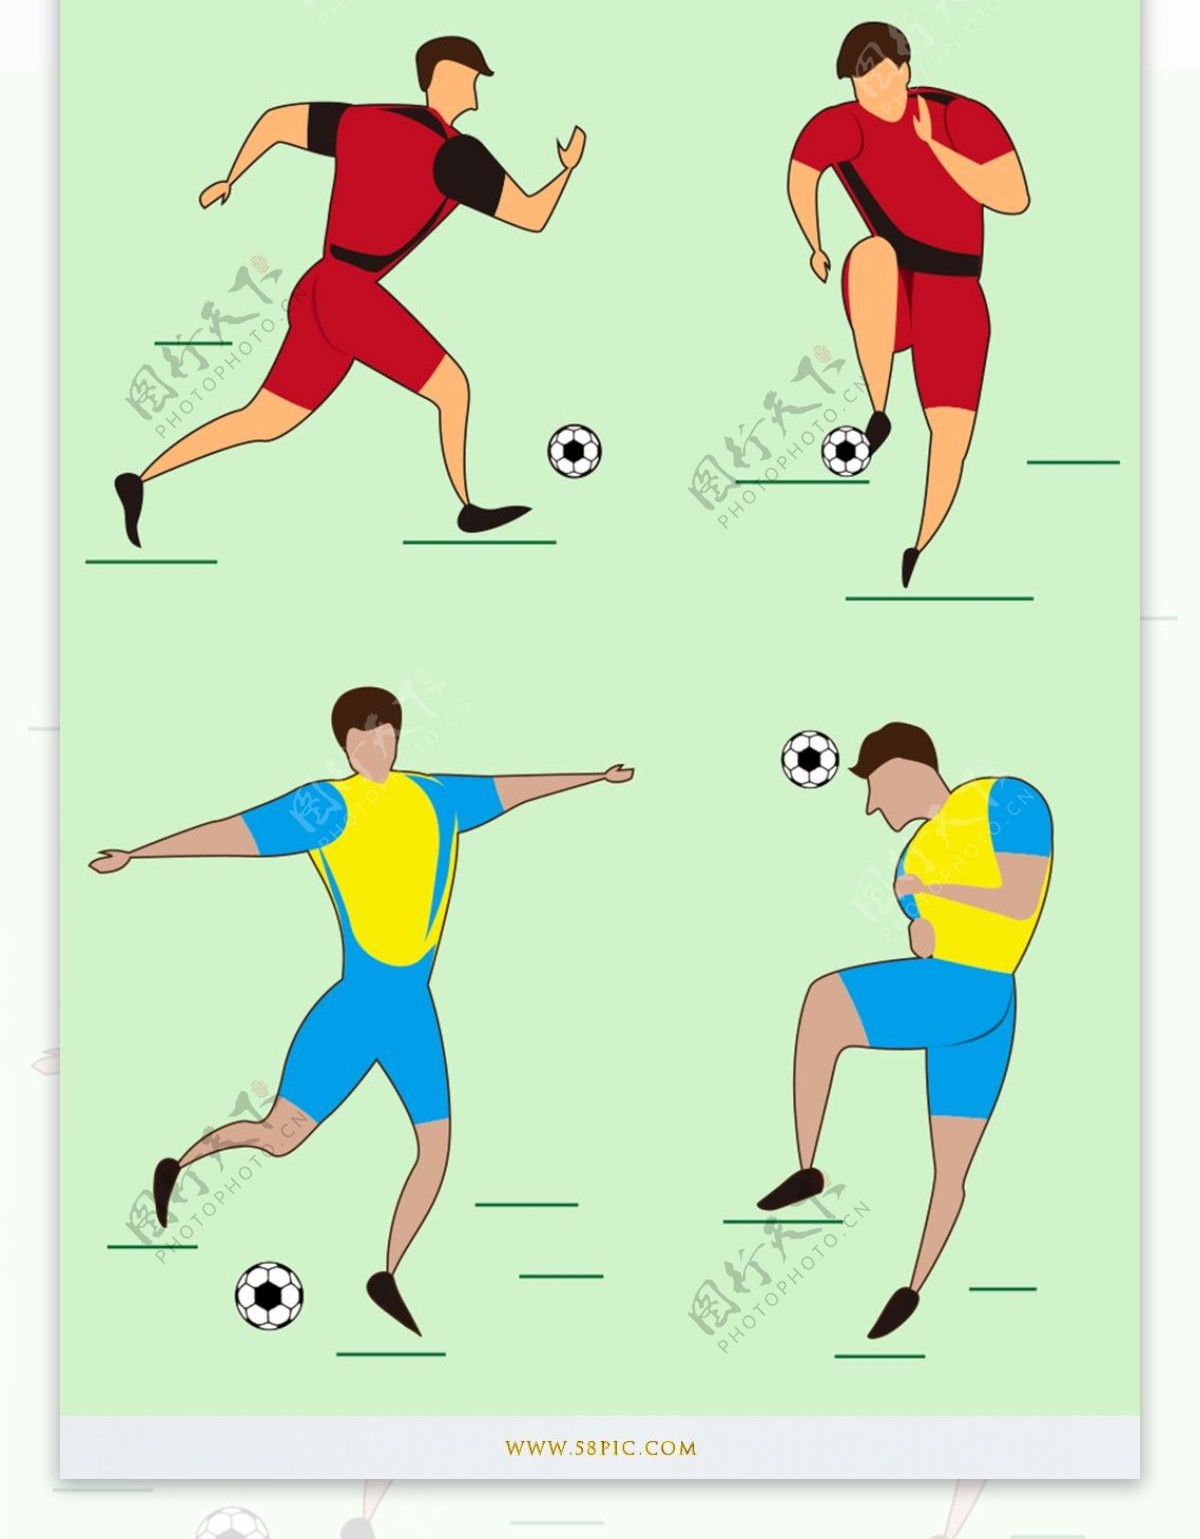 世界杯踢球运动员简约插画原创设计元素